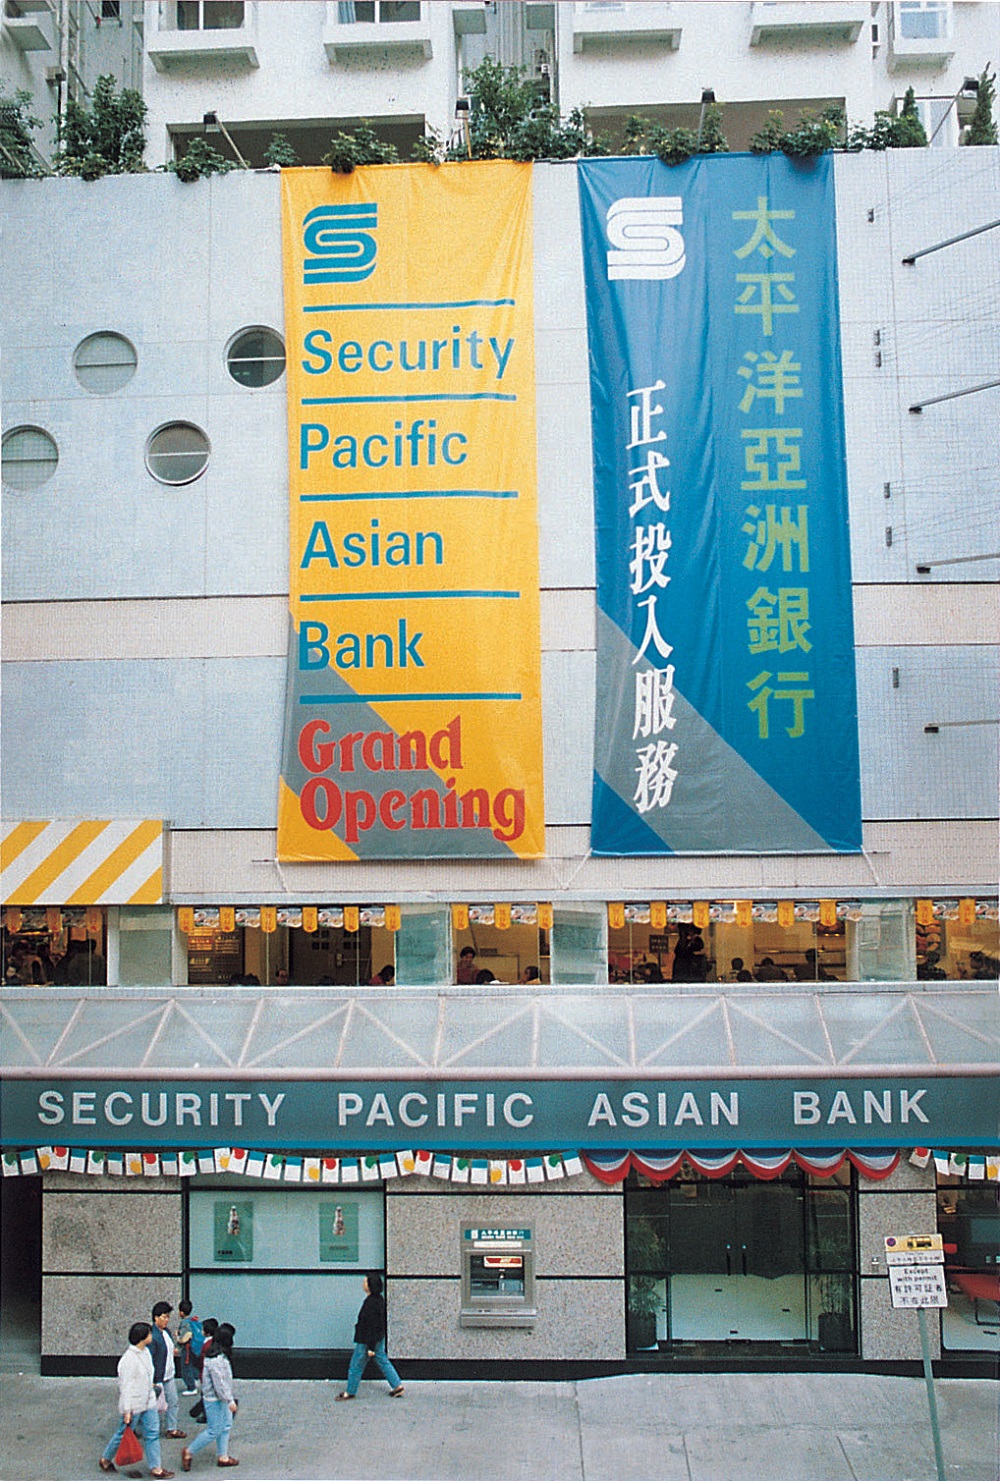 太平洋亚洲银行正式投入服务